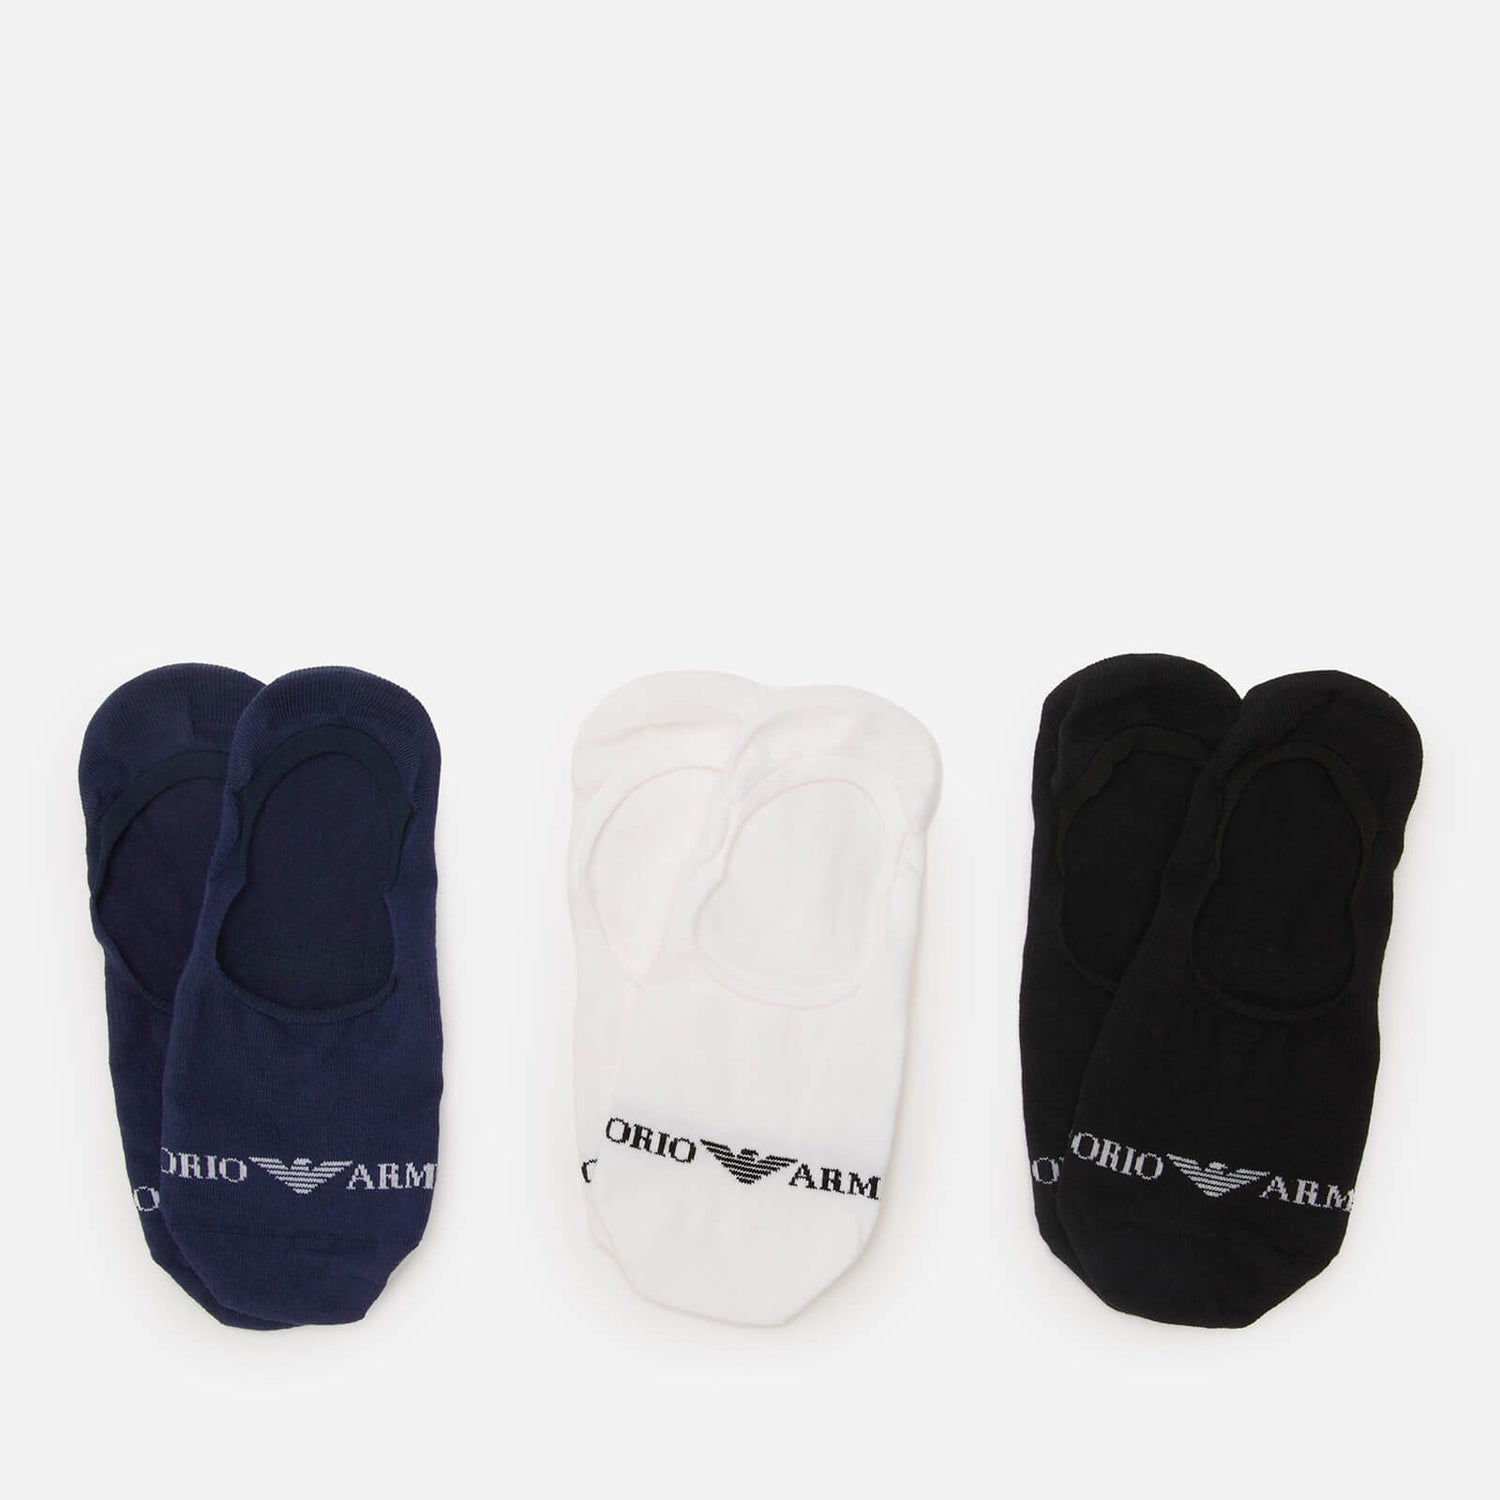 Emporio Armani Men's 3-Pack Invisible Socks - Indigo/Black/White - S/M